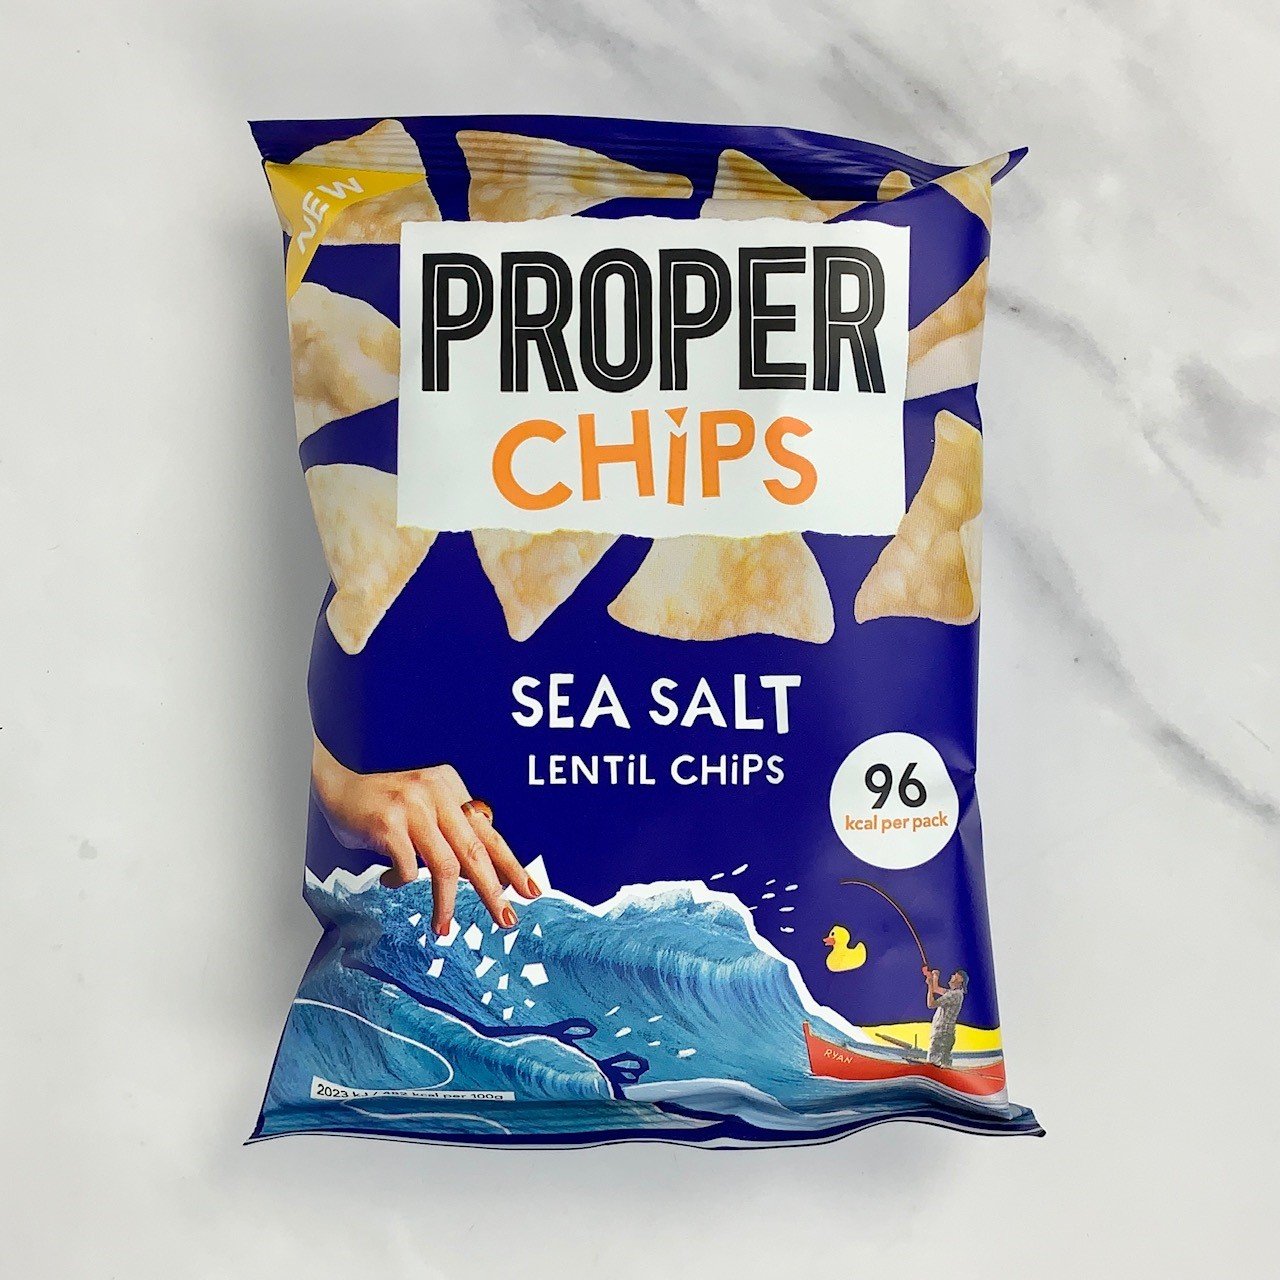 Sea Salt Properchips – 24 x 20g